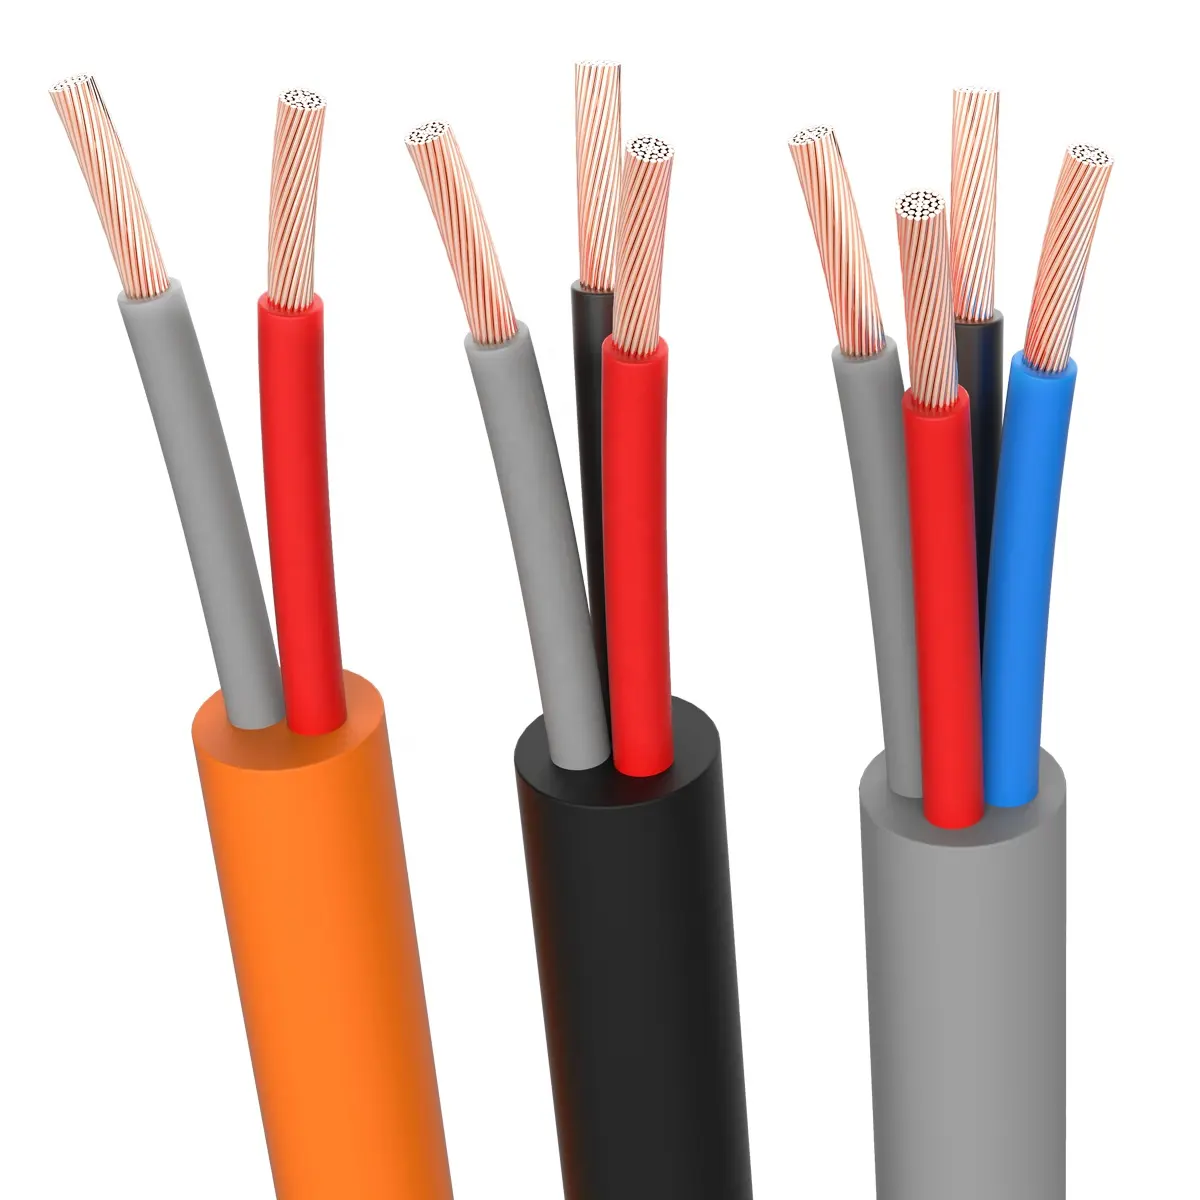 OEM ODM kích thước pvc xlpe dây đồng giá điện cotton cable 2.5mm 4mm 10mm 2.5mm điện dây cáp